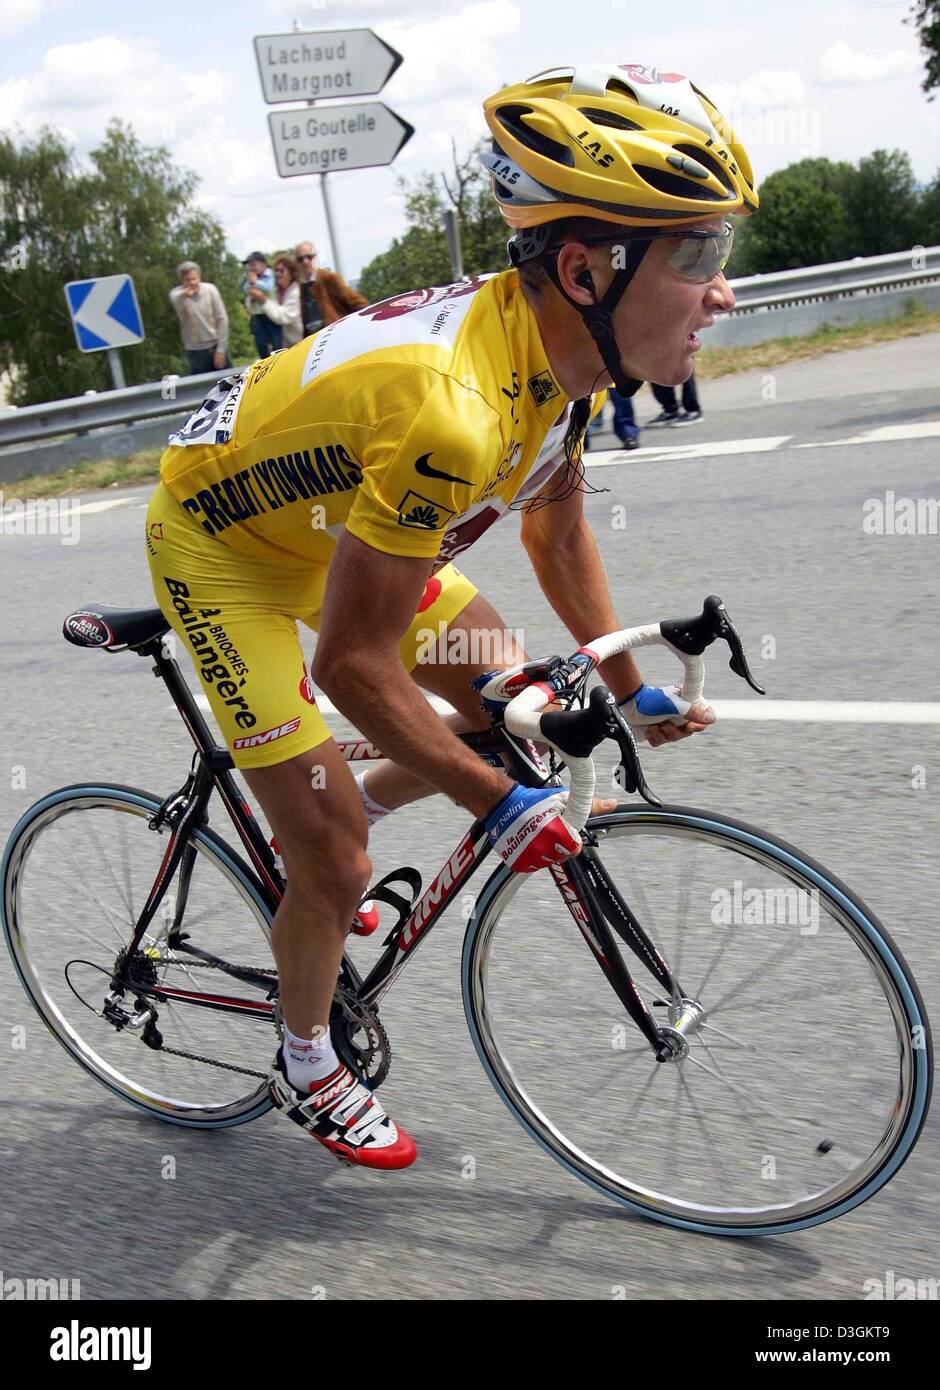 Afp) - 25 ans, coureur cycliste Français Thomas Voeckler de l'équipe  Brioches La Boulangere porte le maillot jaune de leader de la course durant  la 9 étape du Tour de France cycliste